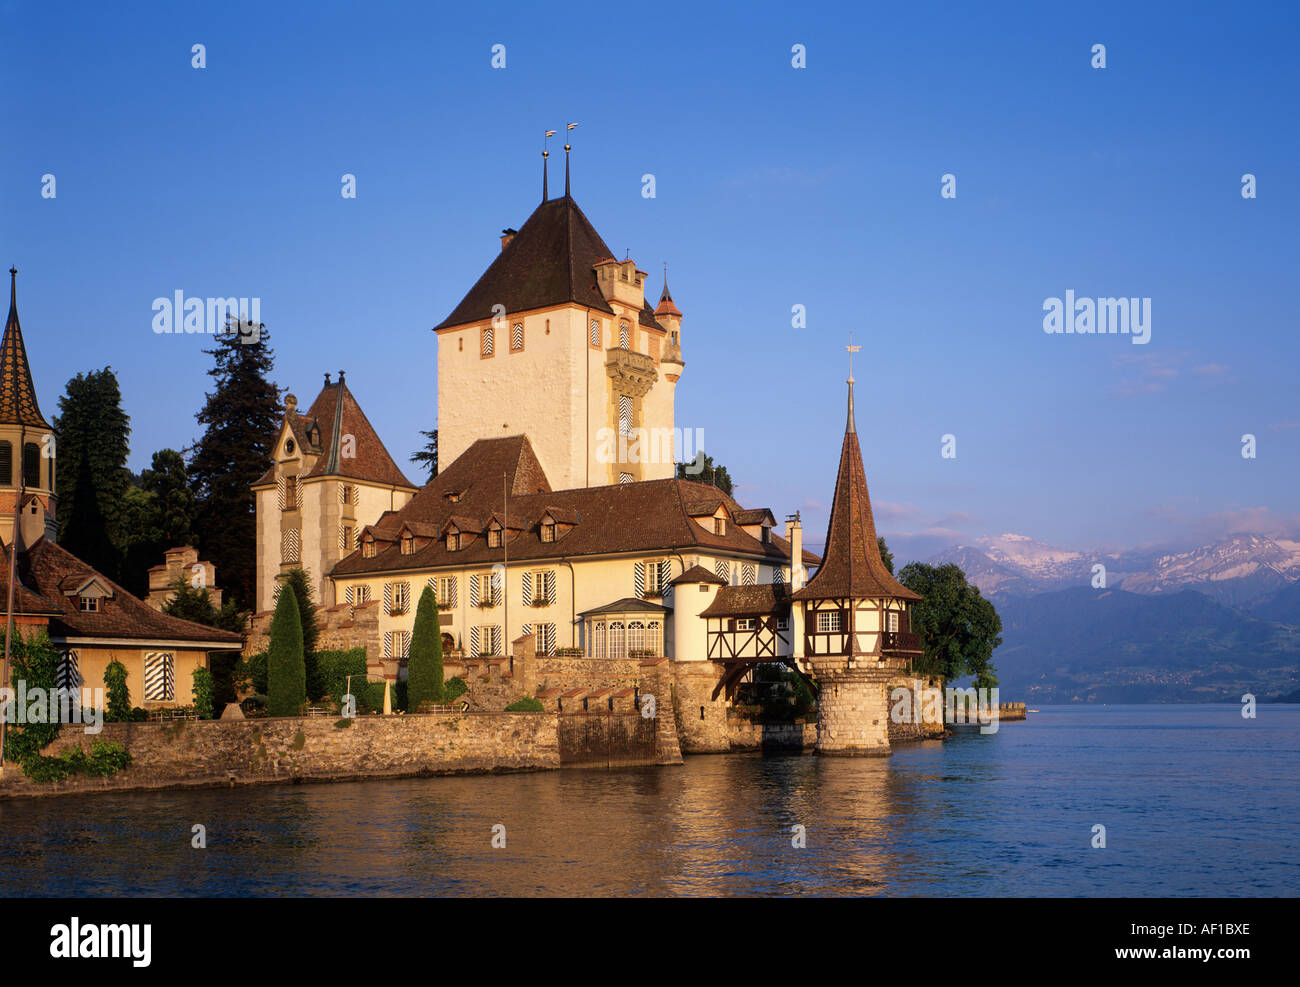 Château Oberhofen sur le lac de Thoune, Suisse Banque D'Images